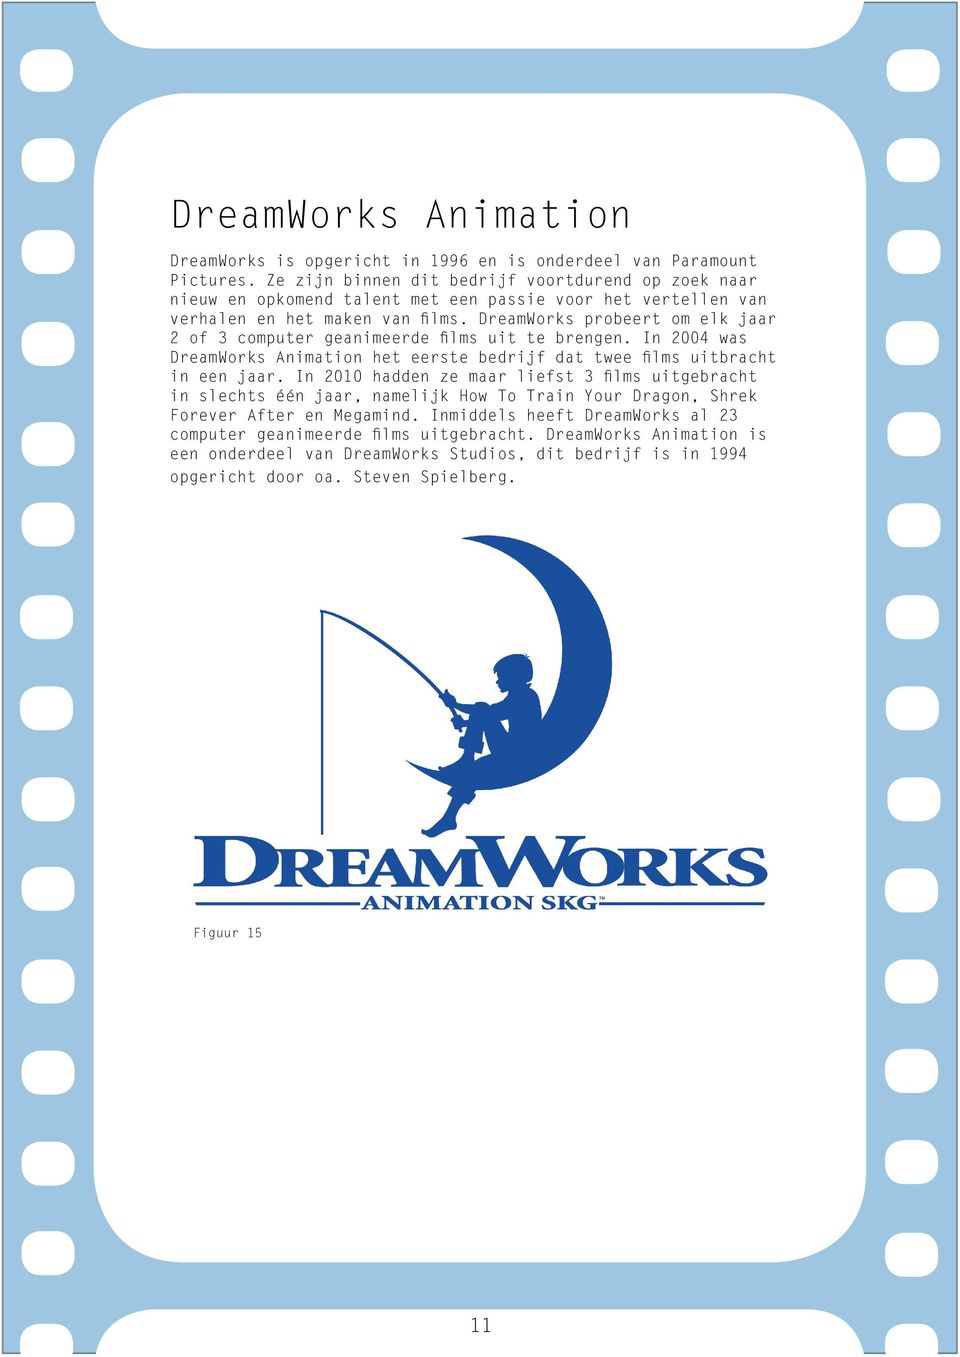 DreamWorks probeert om elk jaar 2 of 3 computer geanimeerde films uit te brengen. In 2004 was DreamWorks Animation het eerste bedrijf dat twee films uitbracht in een jaar.